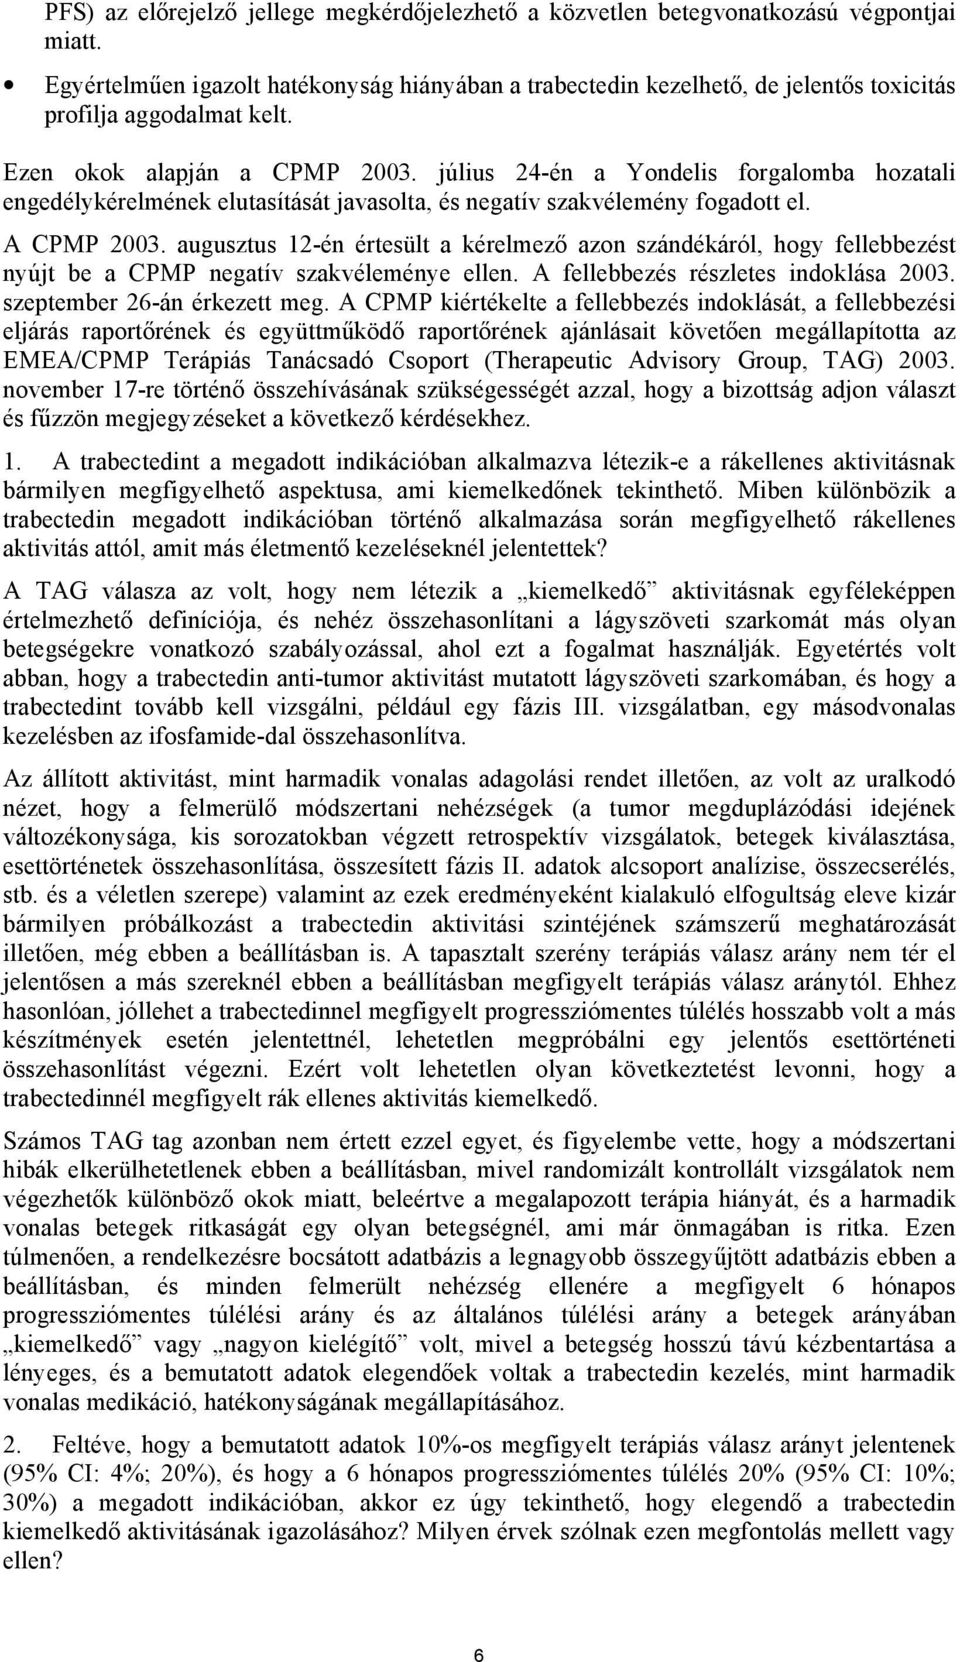 július 24-én a Yondelis forgalomba hozatali engedélykérelmének elutasítását javasolta, és negatív szakvélemény fogadott el. A CPMP 2003.